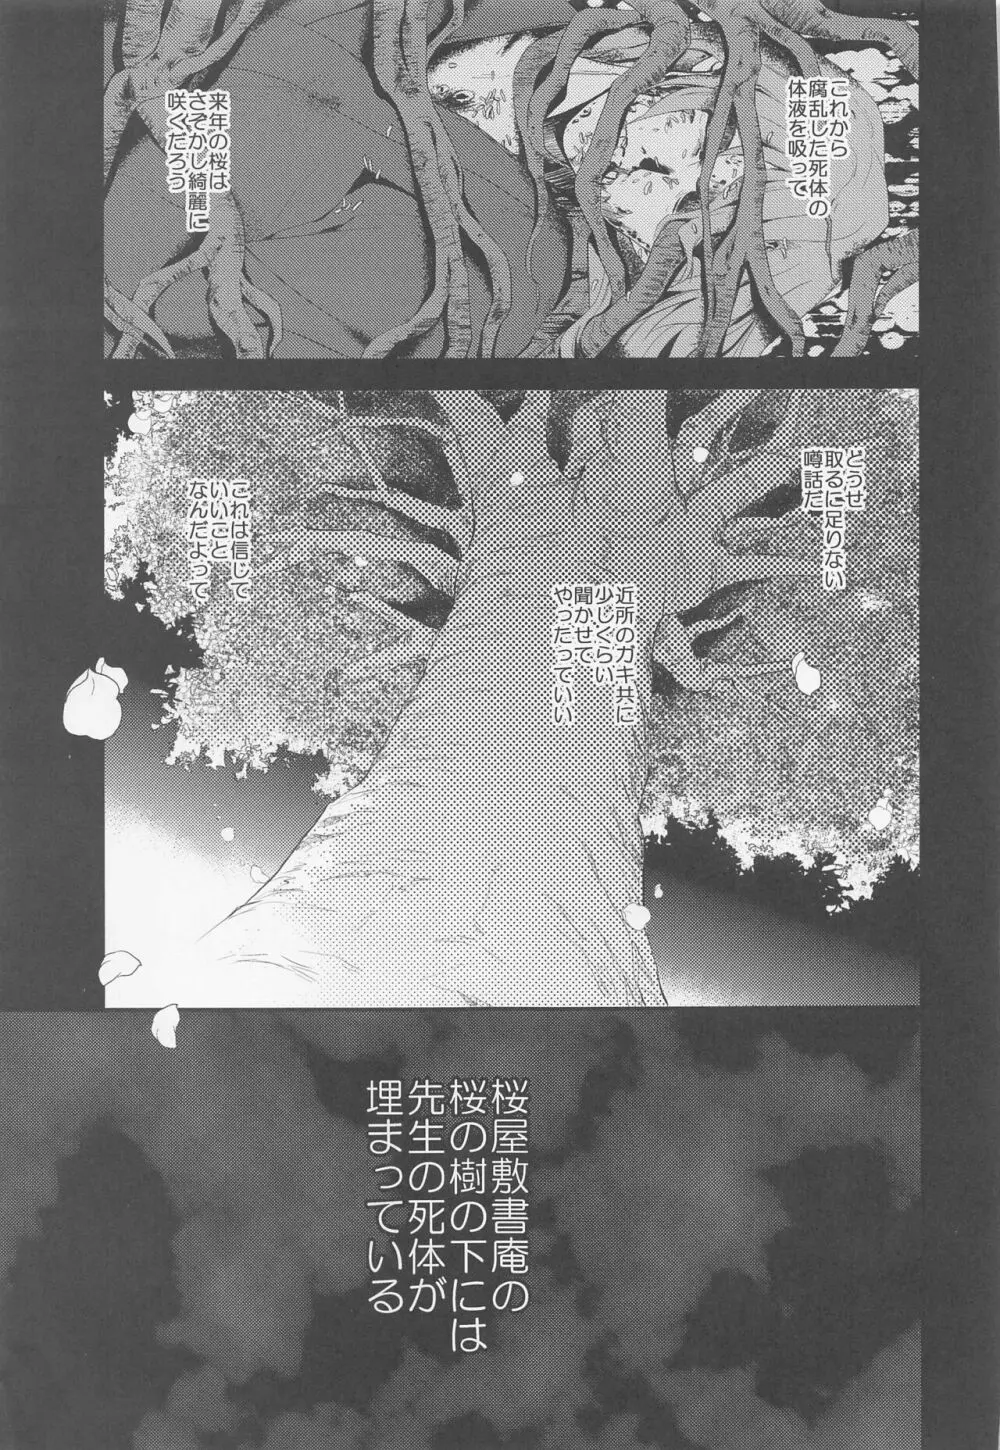 桜屋敷書庵の桜の樹の下には死体が埋まっている 44ページ